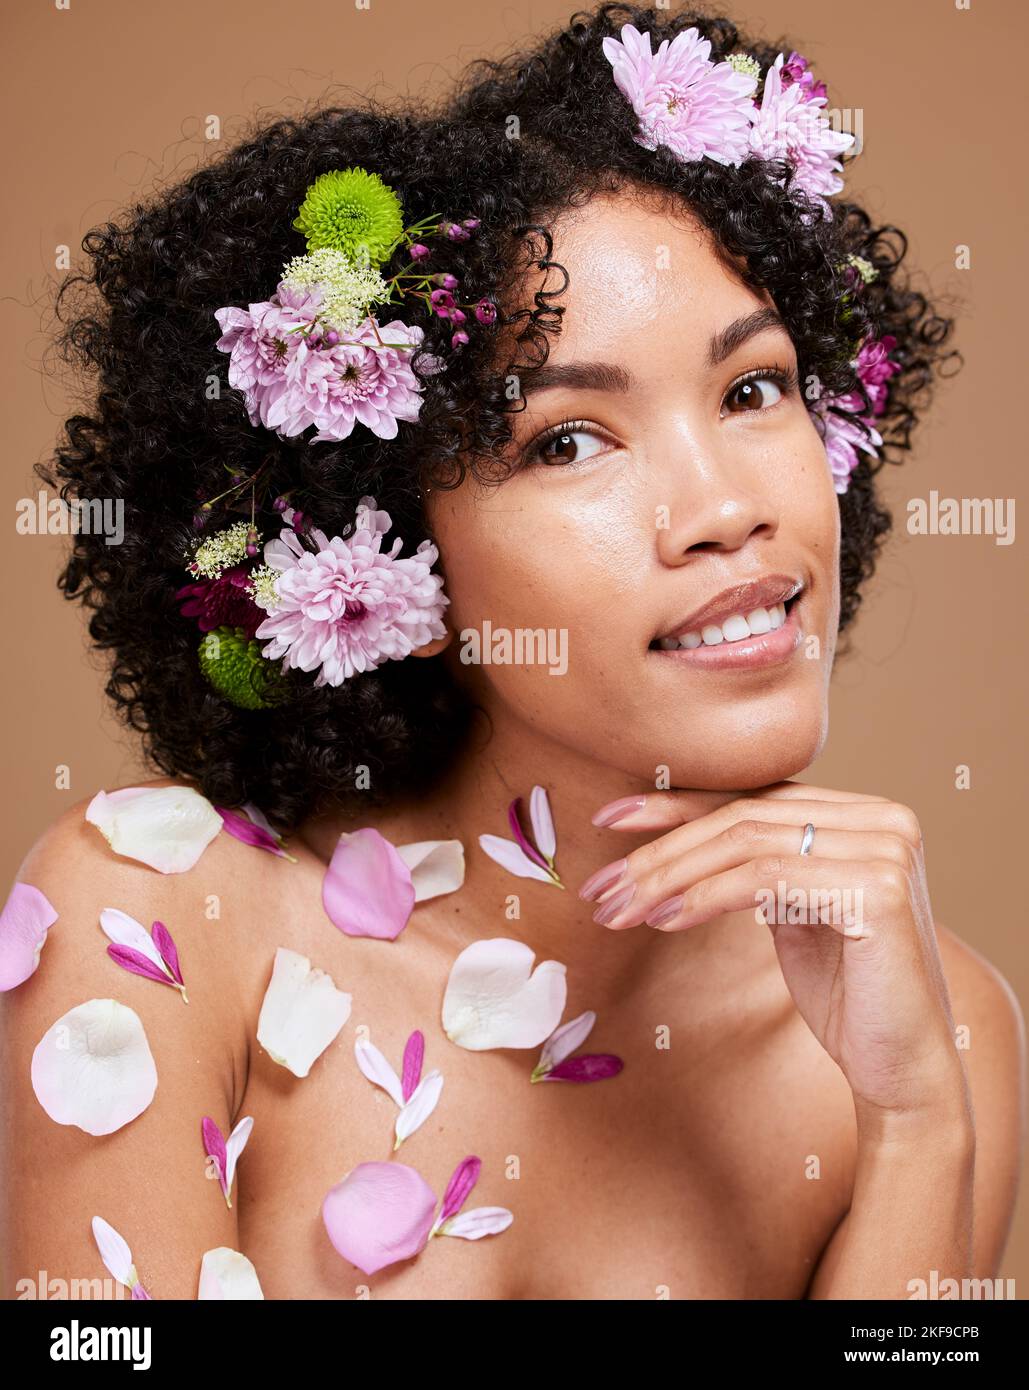 Schönheit, Kunst und schwarze Frau mit Blumen im Haar im Porträt mit Studio-Hintergrund. Natur, Luxus-Spa und Frau mit Blumenkrone, natürliche Hautpflege Stockfoto